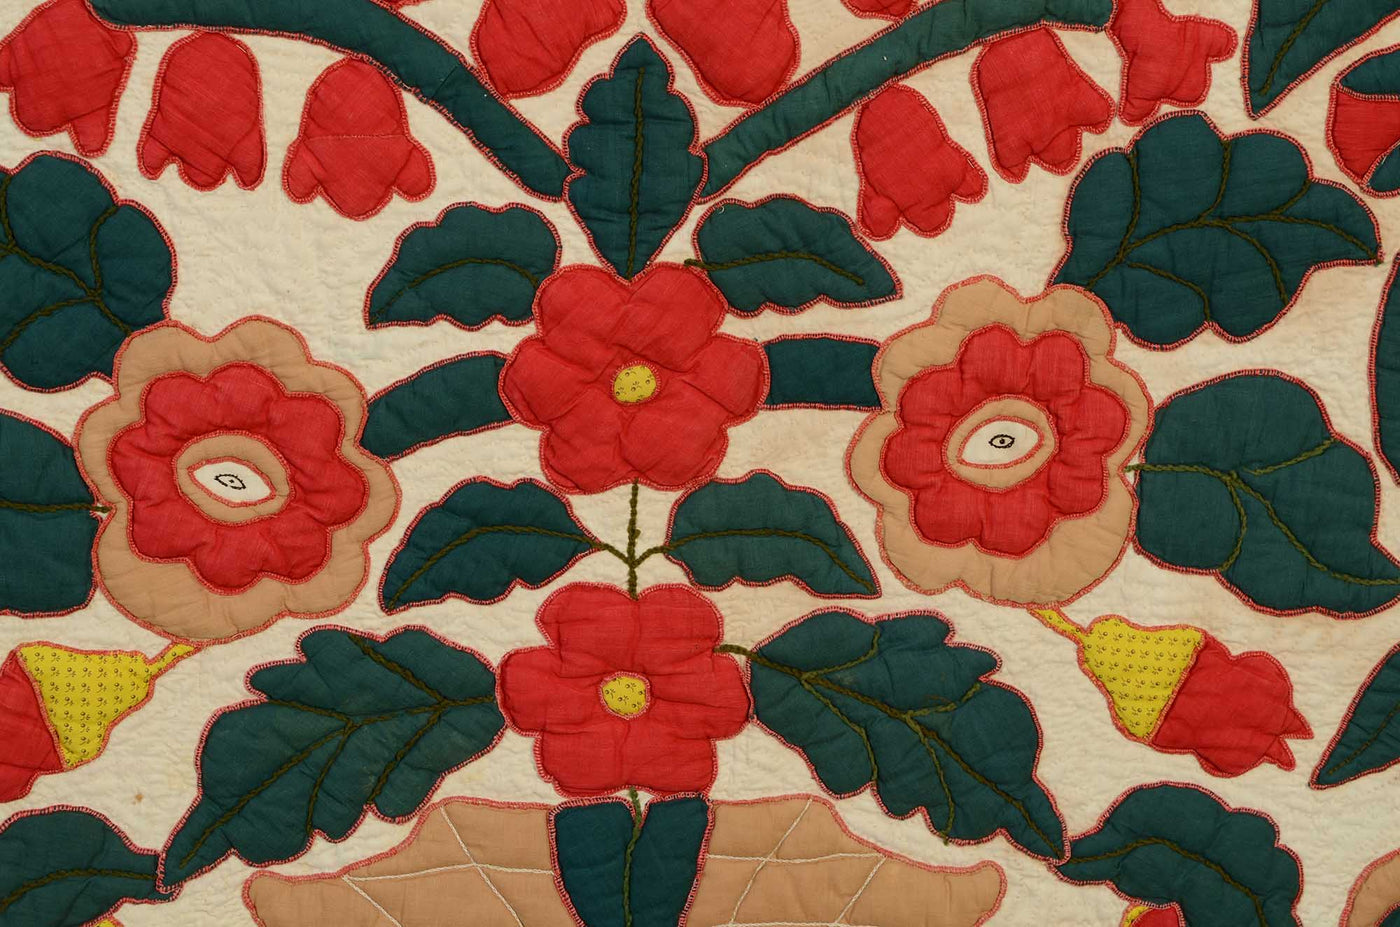 pots-of-flowers-stuffed-applique-quilt-1400548-detail-5